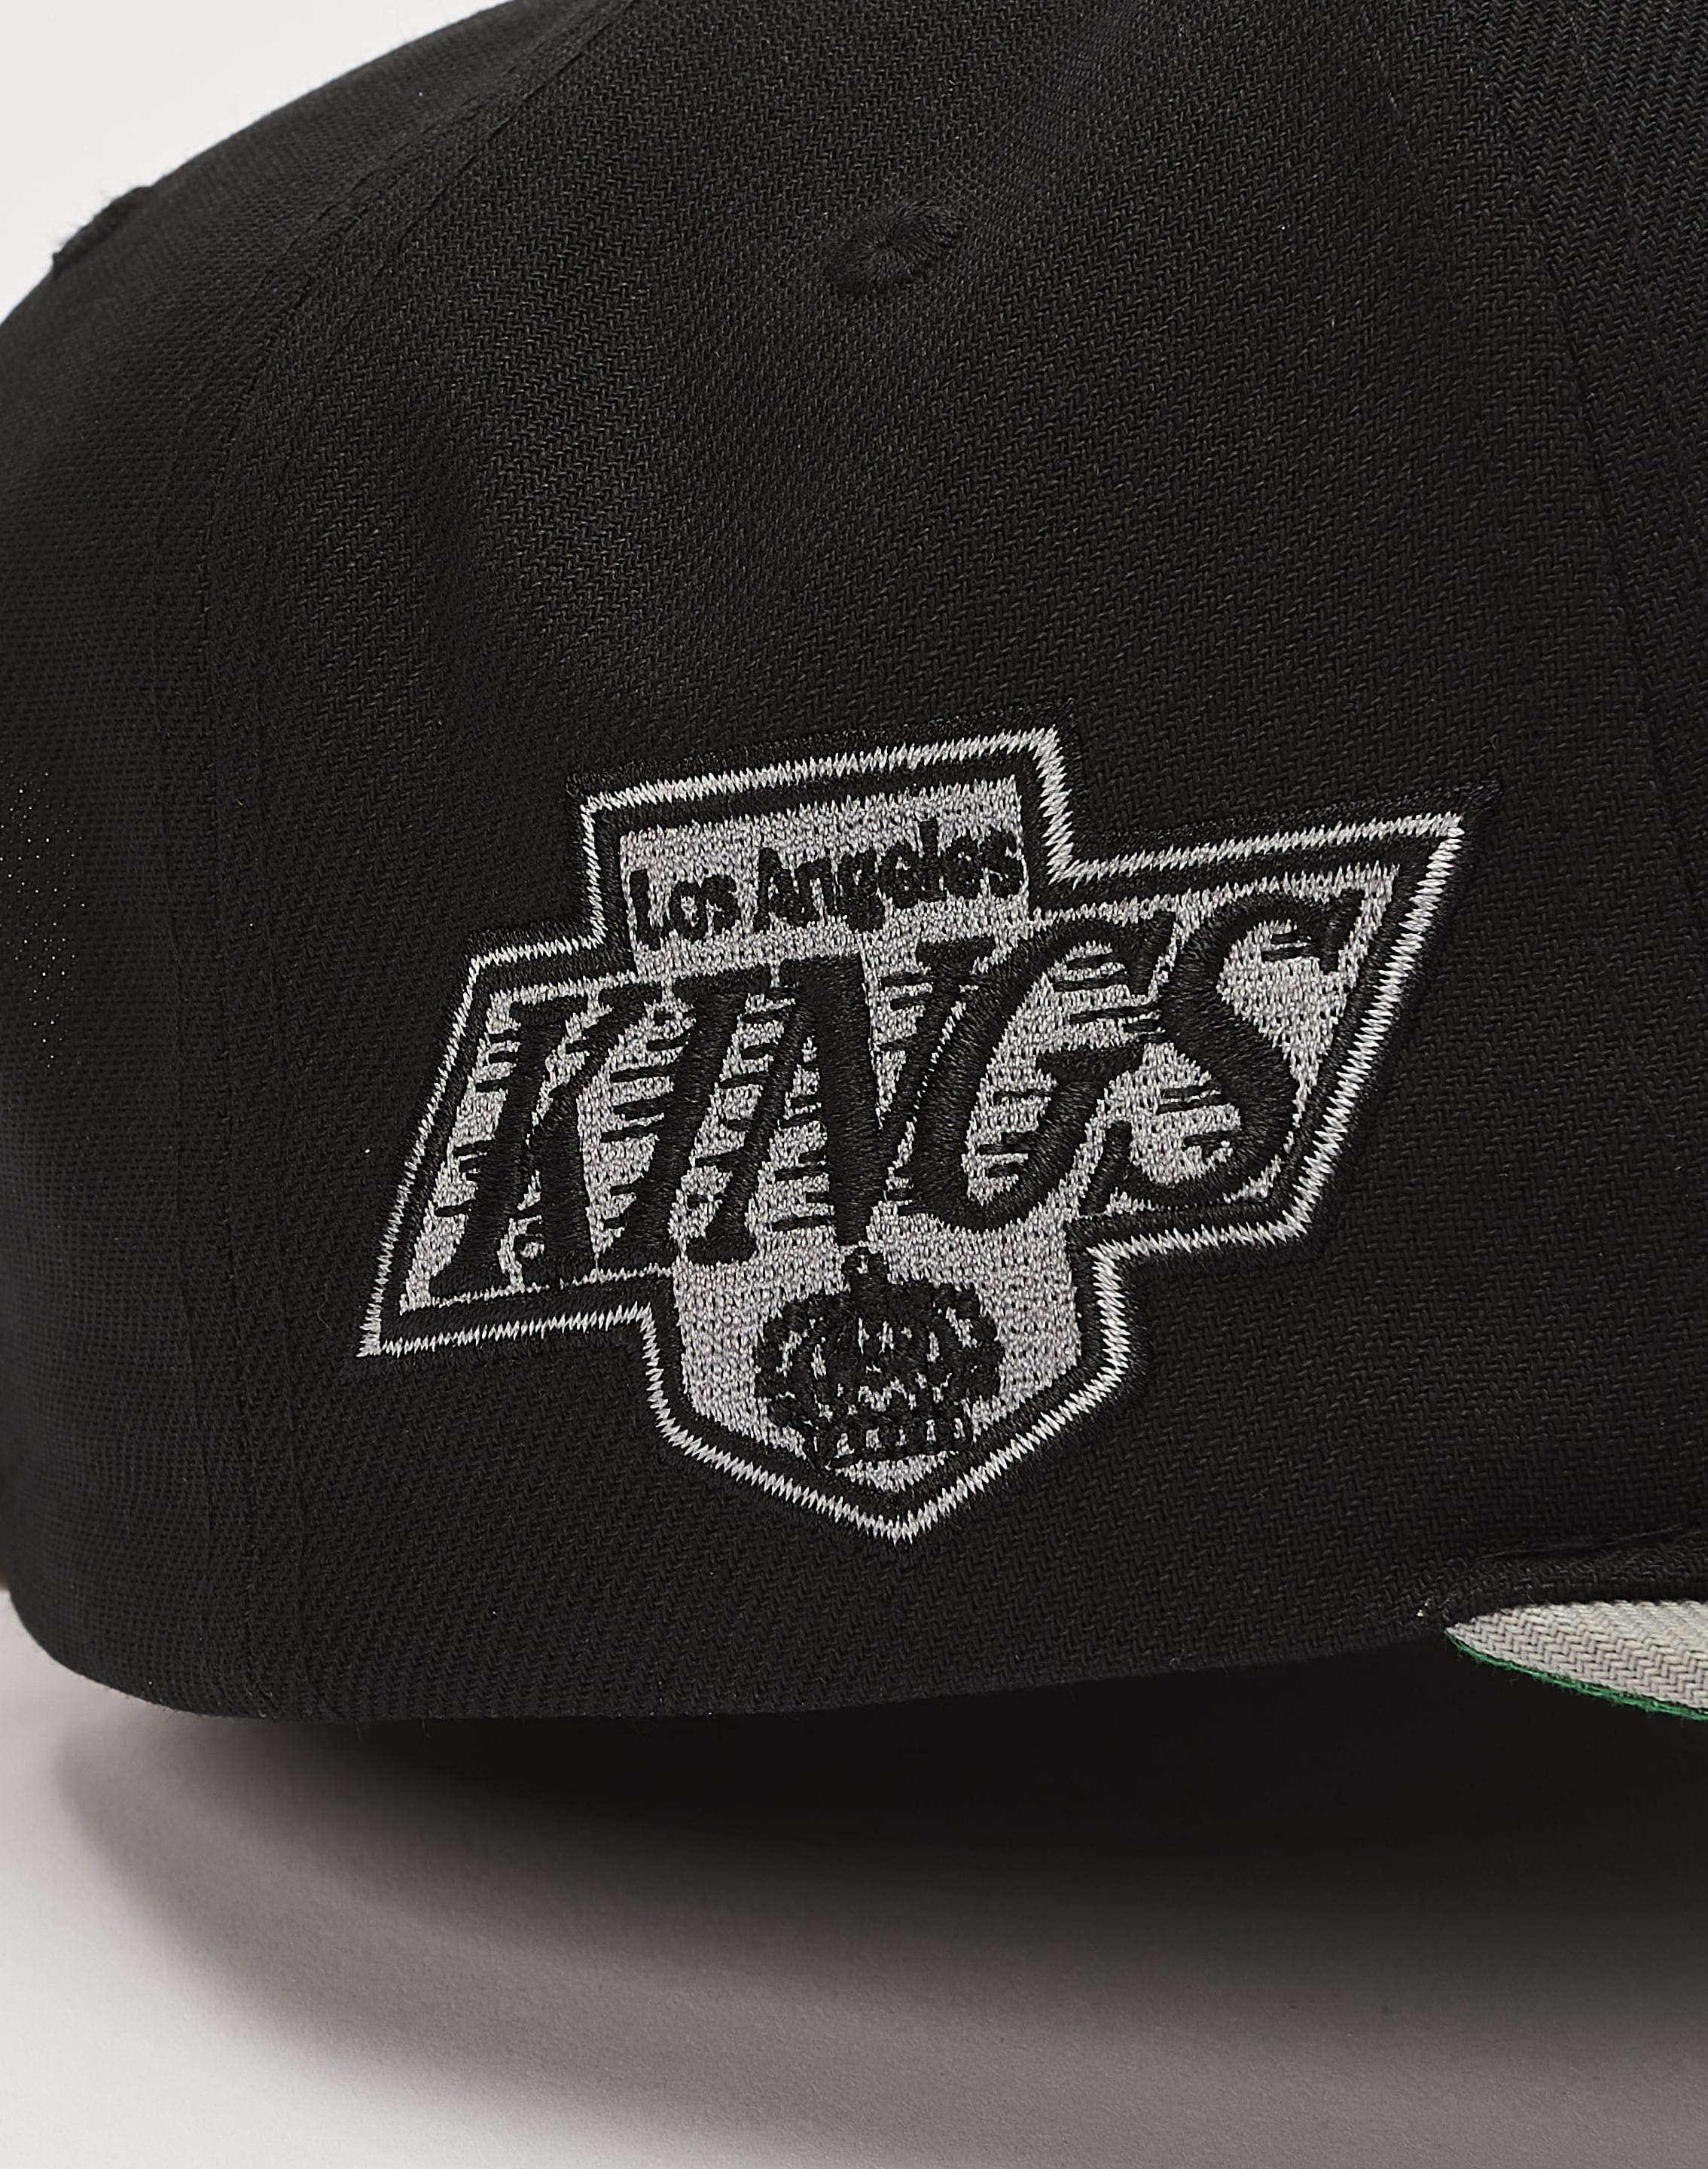 LOS ANGELES KINGS HYBRID WOOL SNAPBACK HAT (BLACK) – Pro Standard